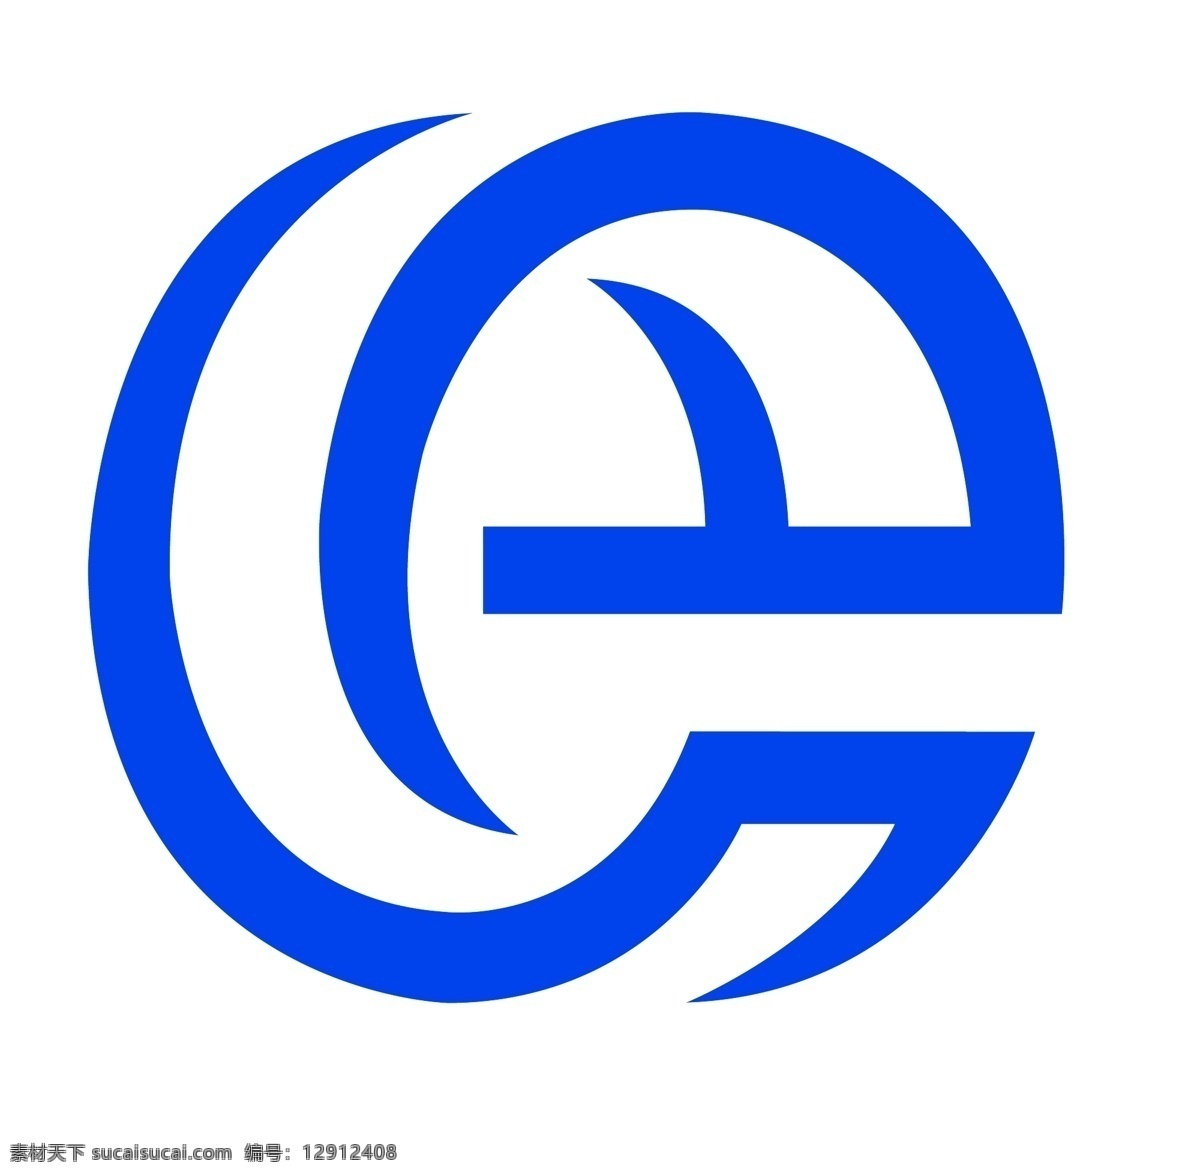 e 互联网 简约 logo logo图标 白色